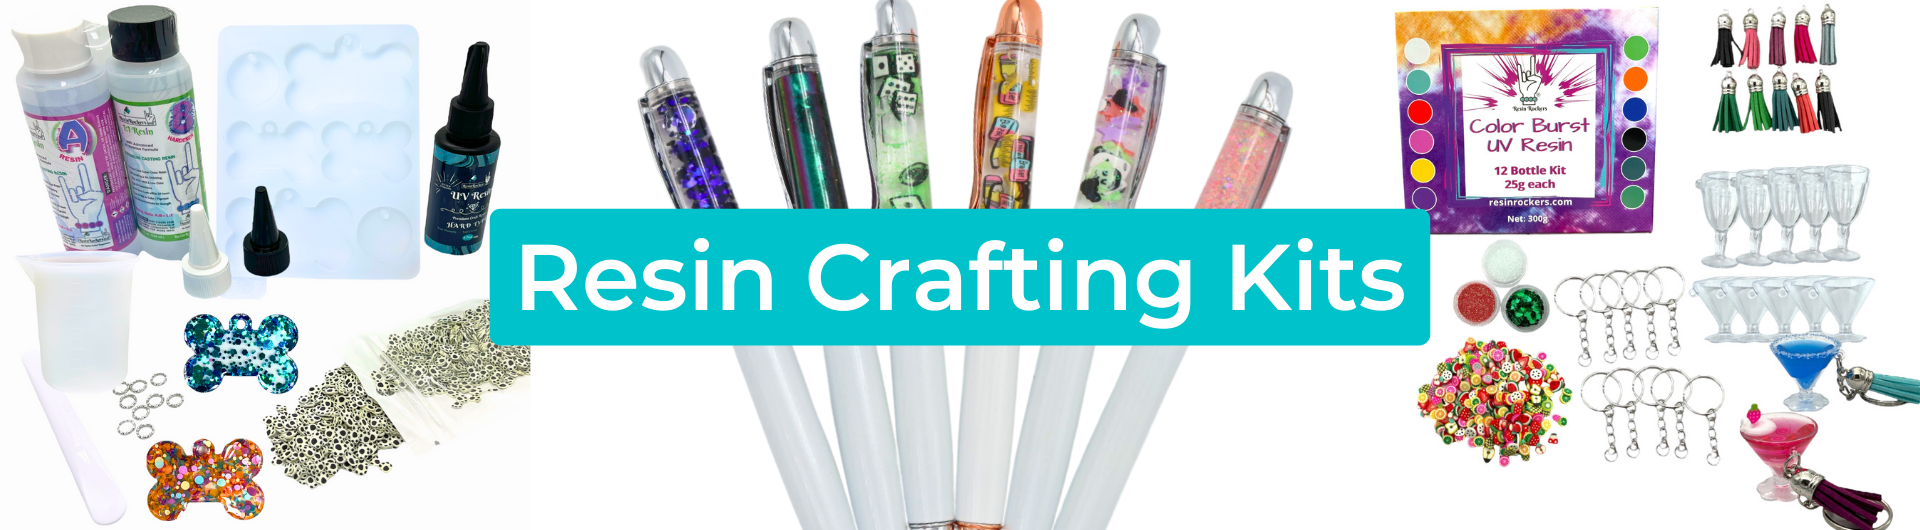 Resin Crafting Kits